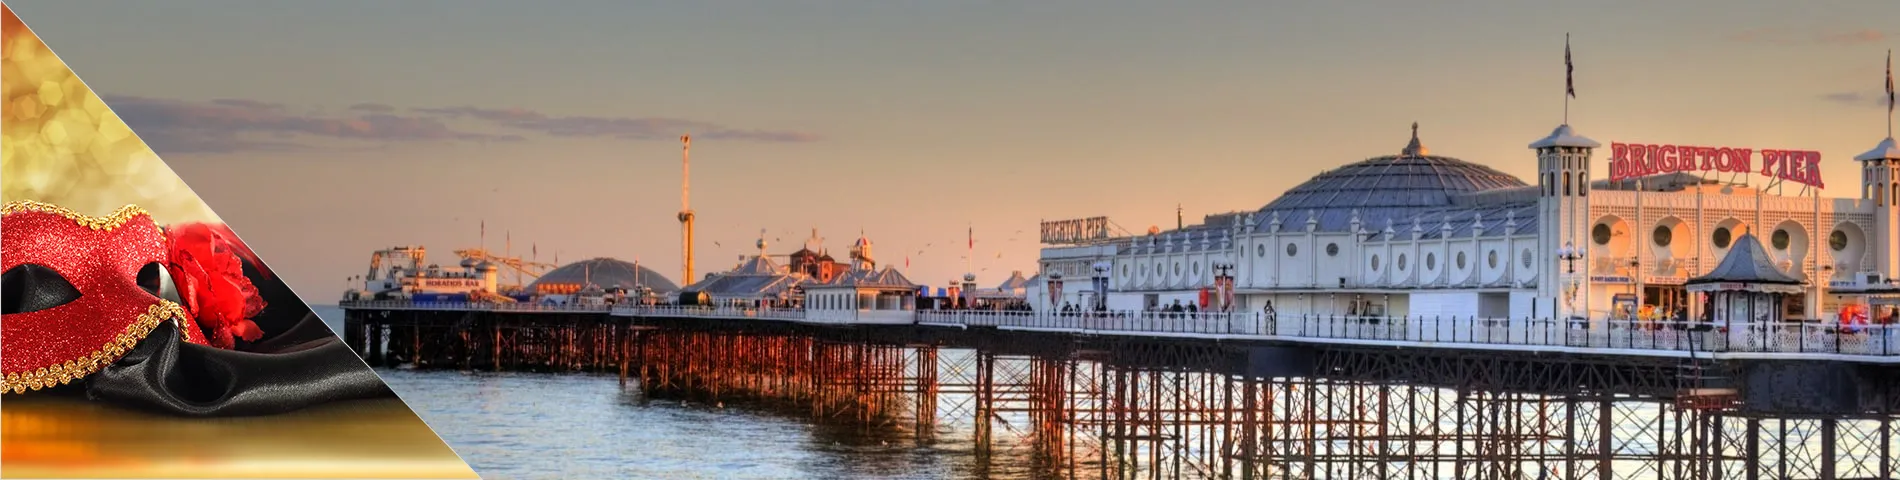 Brighton - Engels & beeldende kunst - acteren